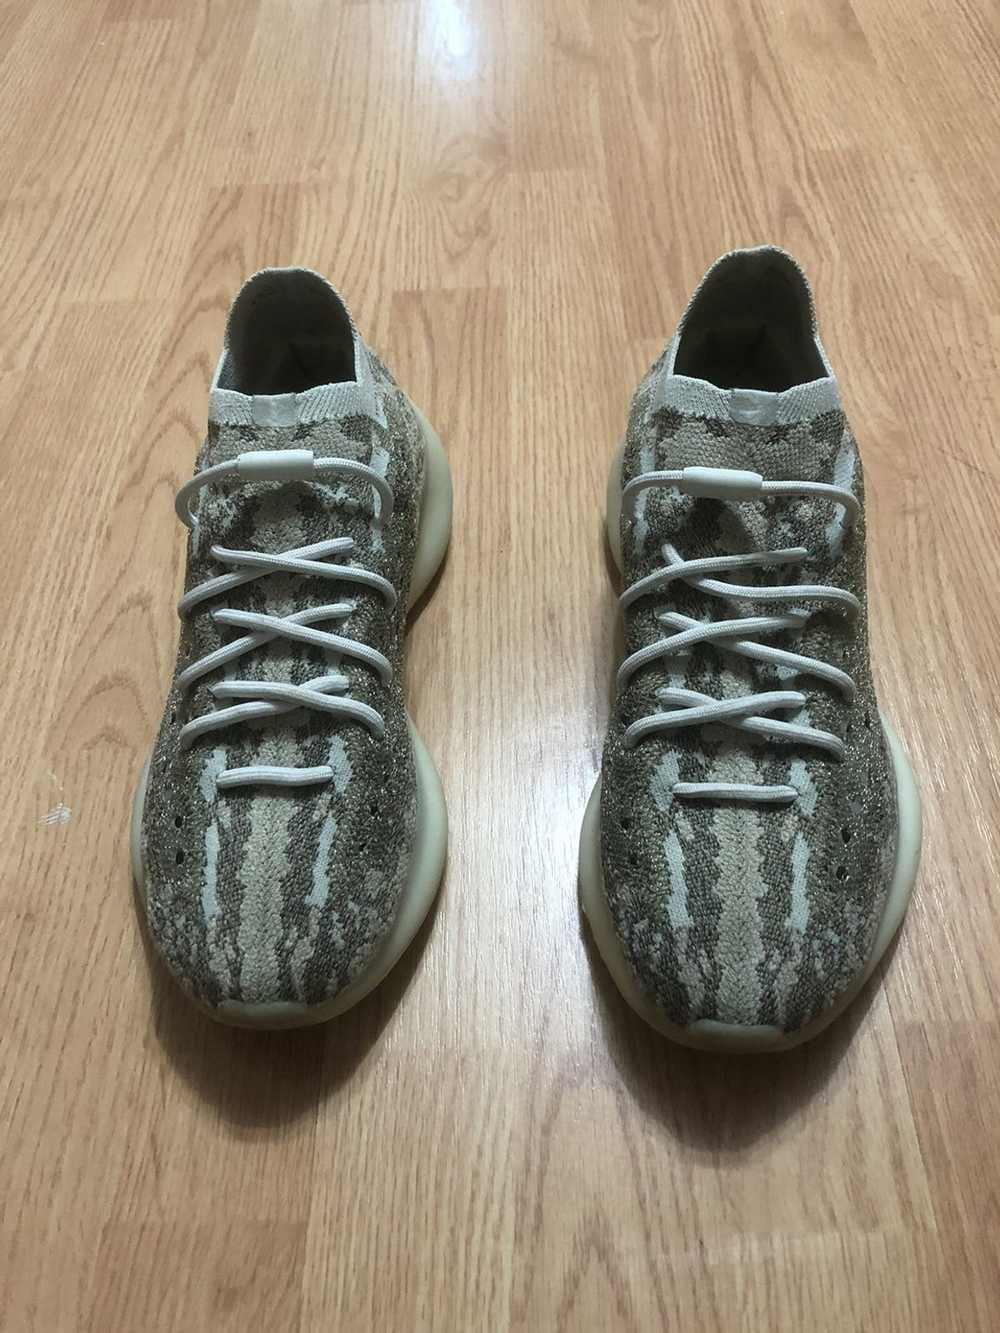 Adidas × Kanye West Yeezy 380 pyrite - image 2